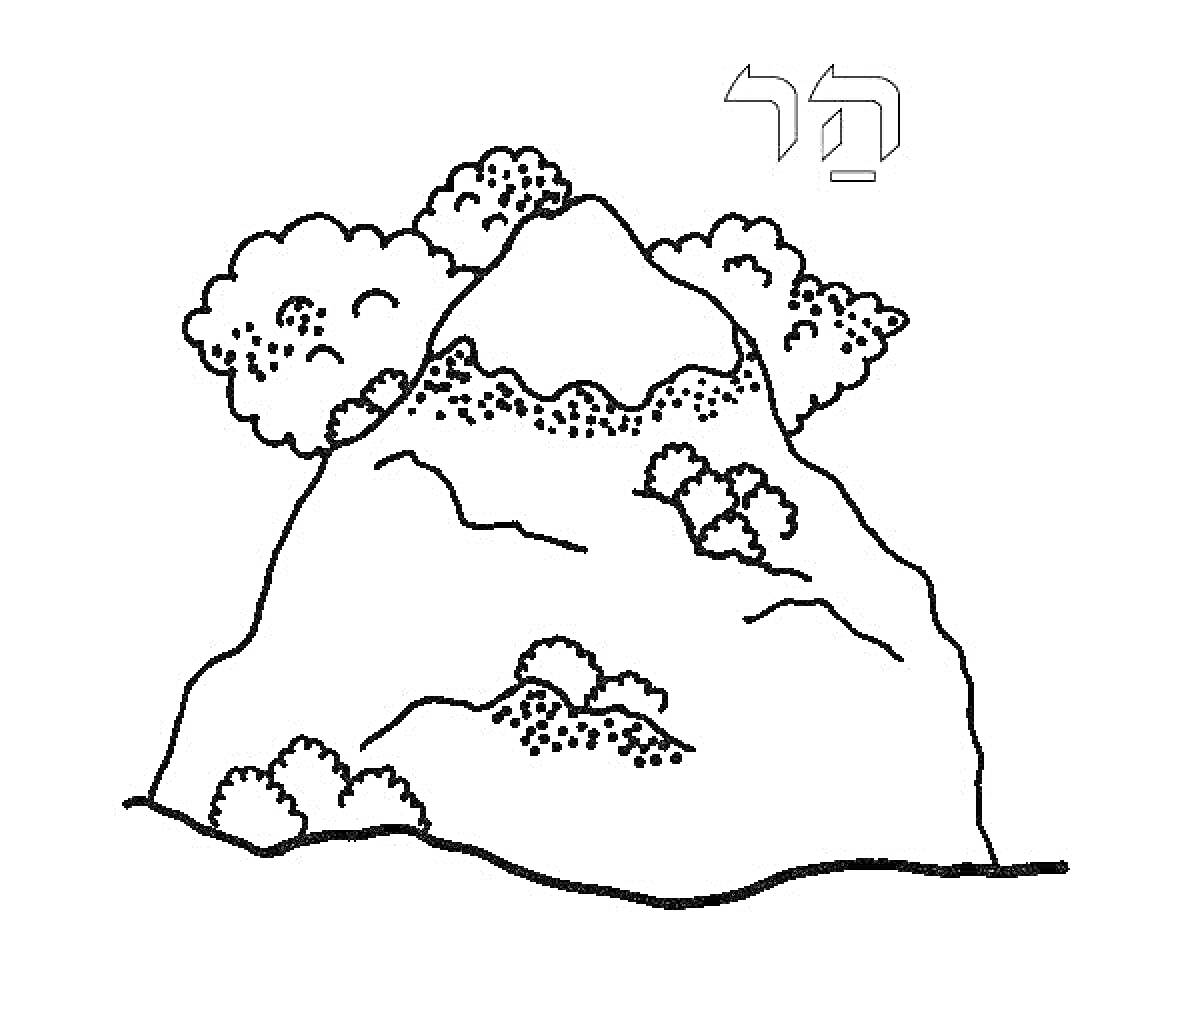 Гора с деревьями и кустарниками на склонах, еврейская буква вверху направо